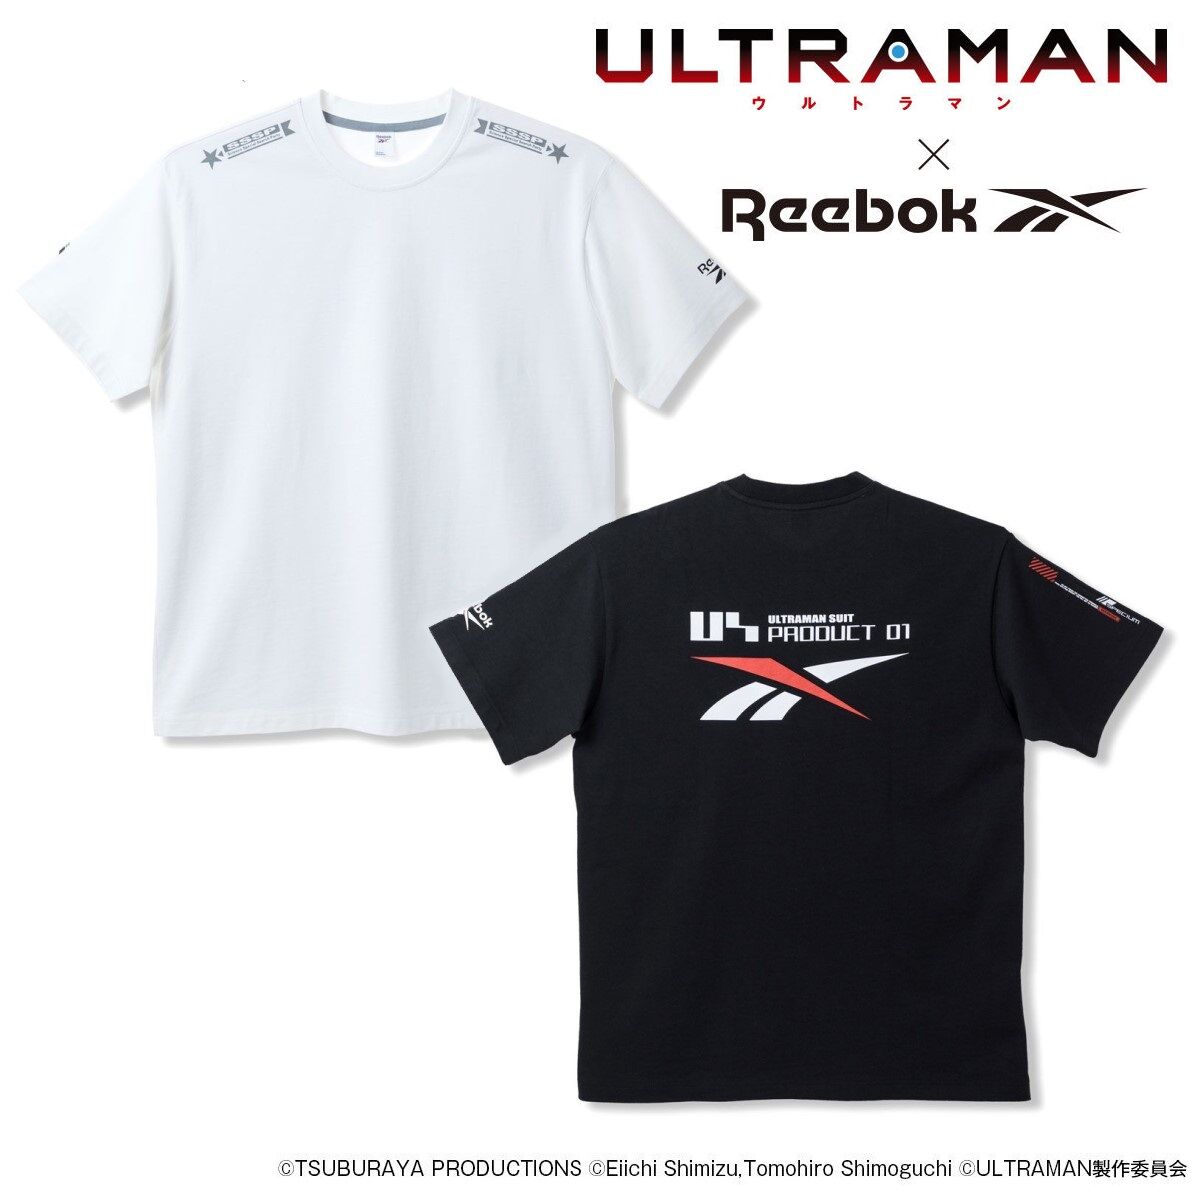 アニメultraman Reebok Tee Tシャツ Ultraman フィギュア プラモデル プラキット バンダイナムコグループ公式通販サイト